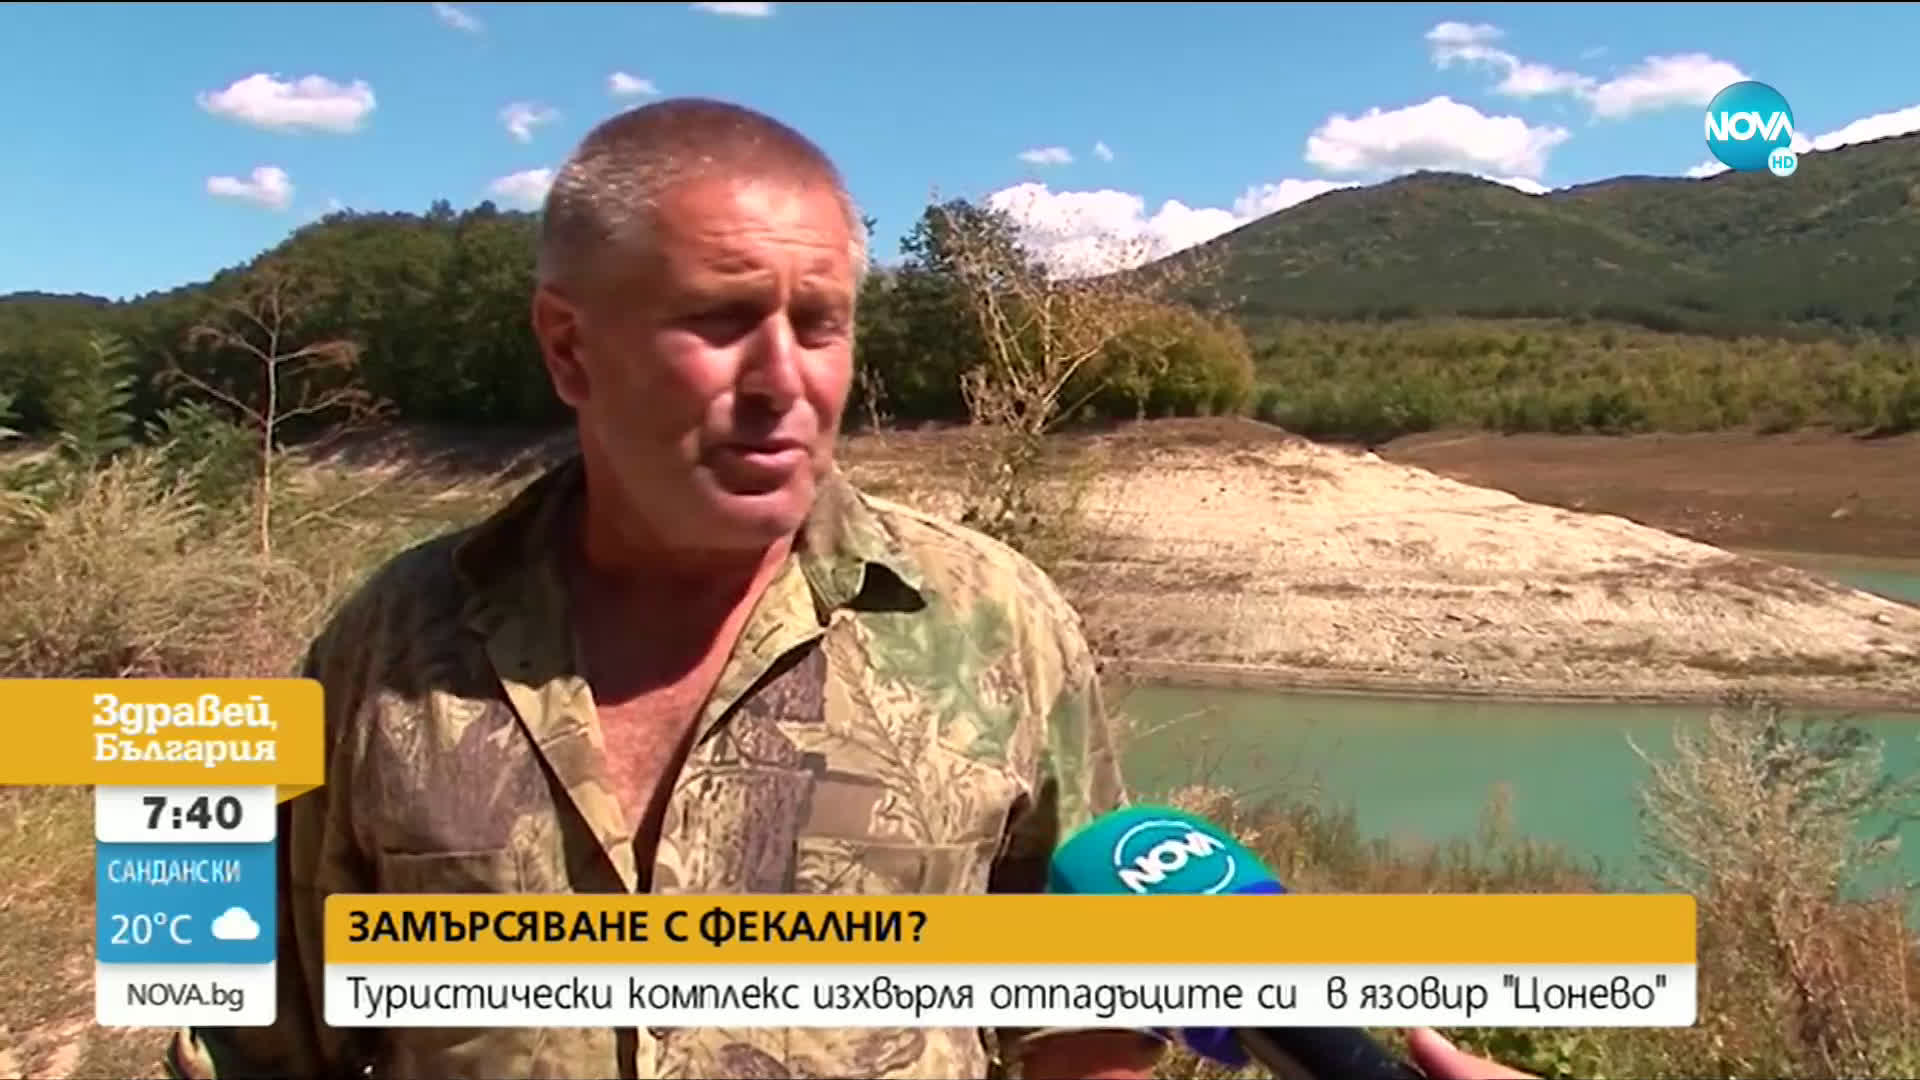 Туристически комплекс изхвърля отпадните си води в язовир „Цонево"